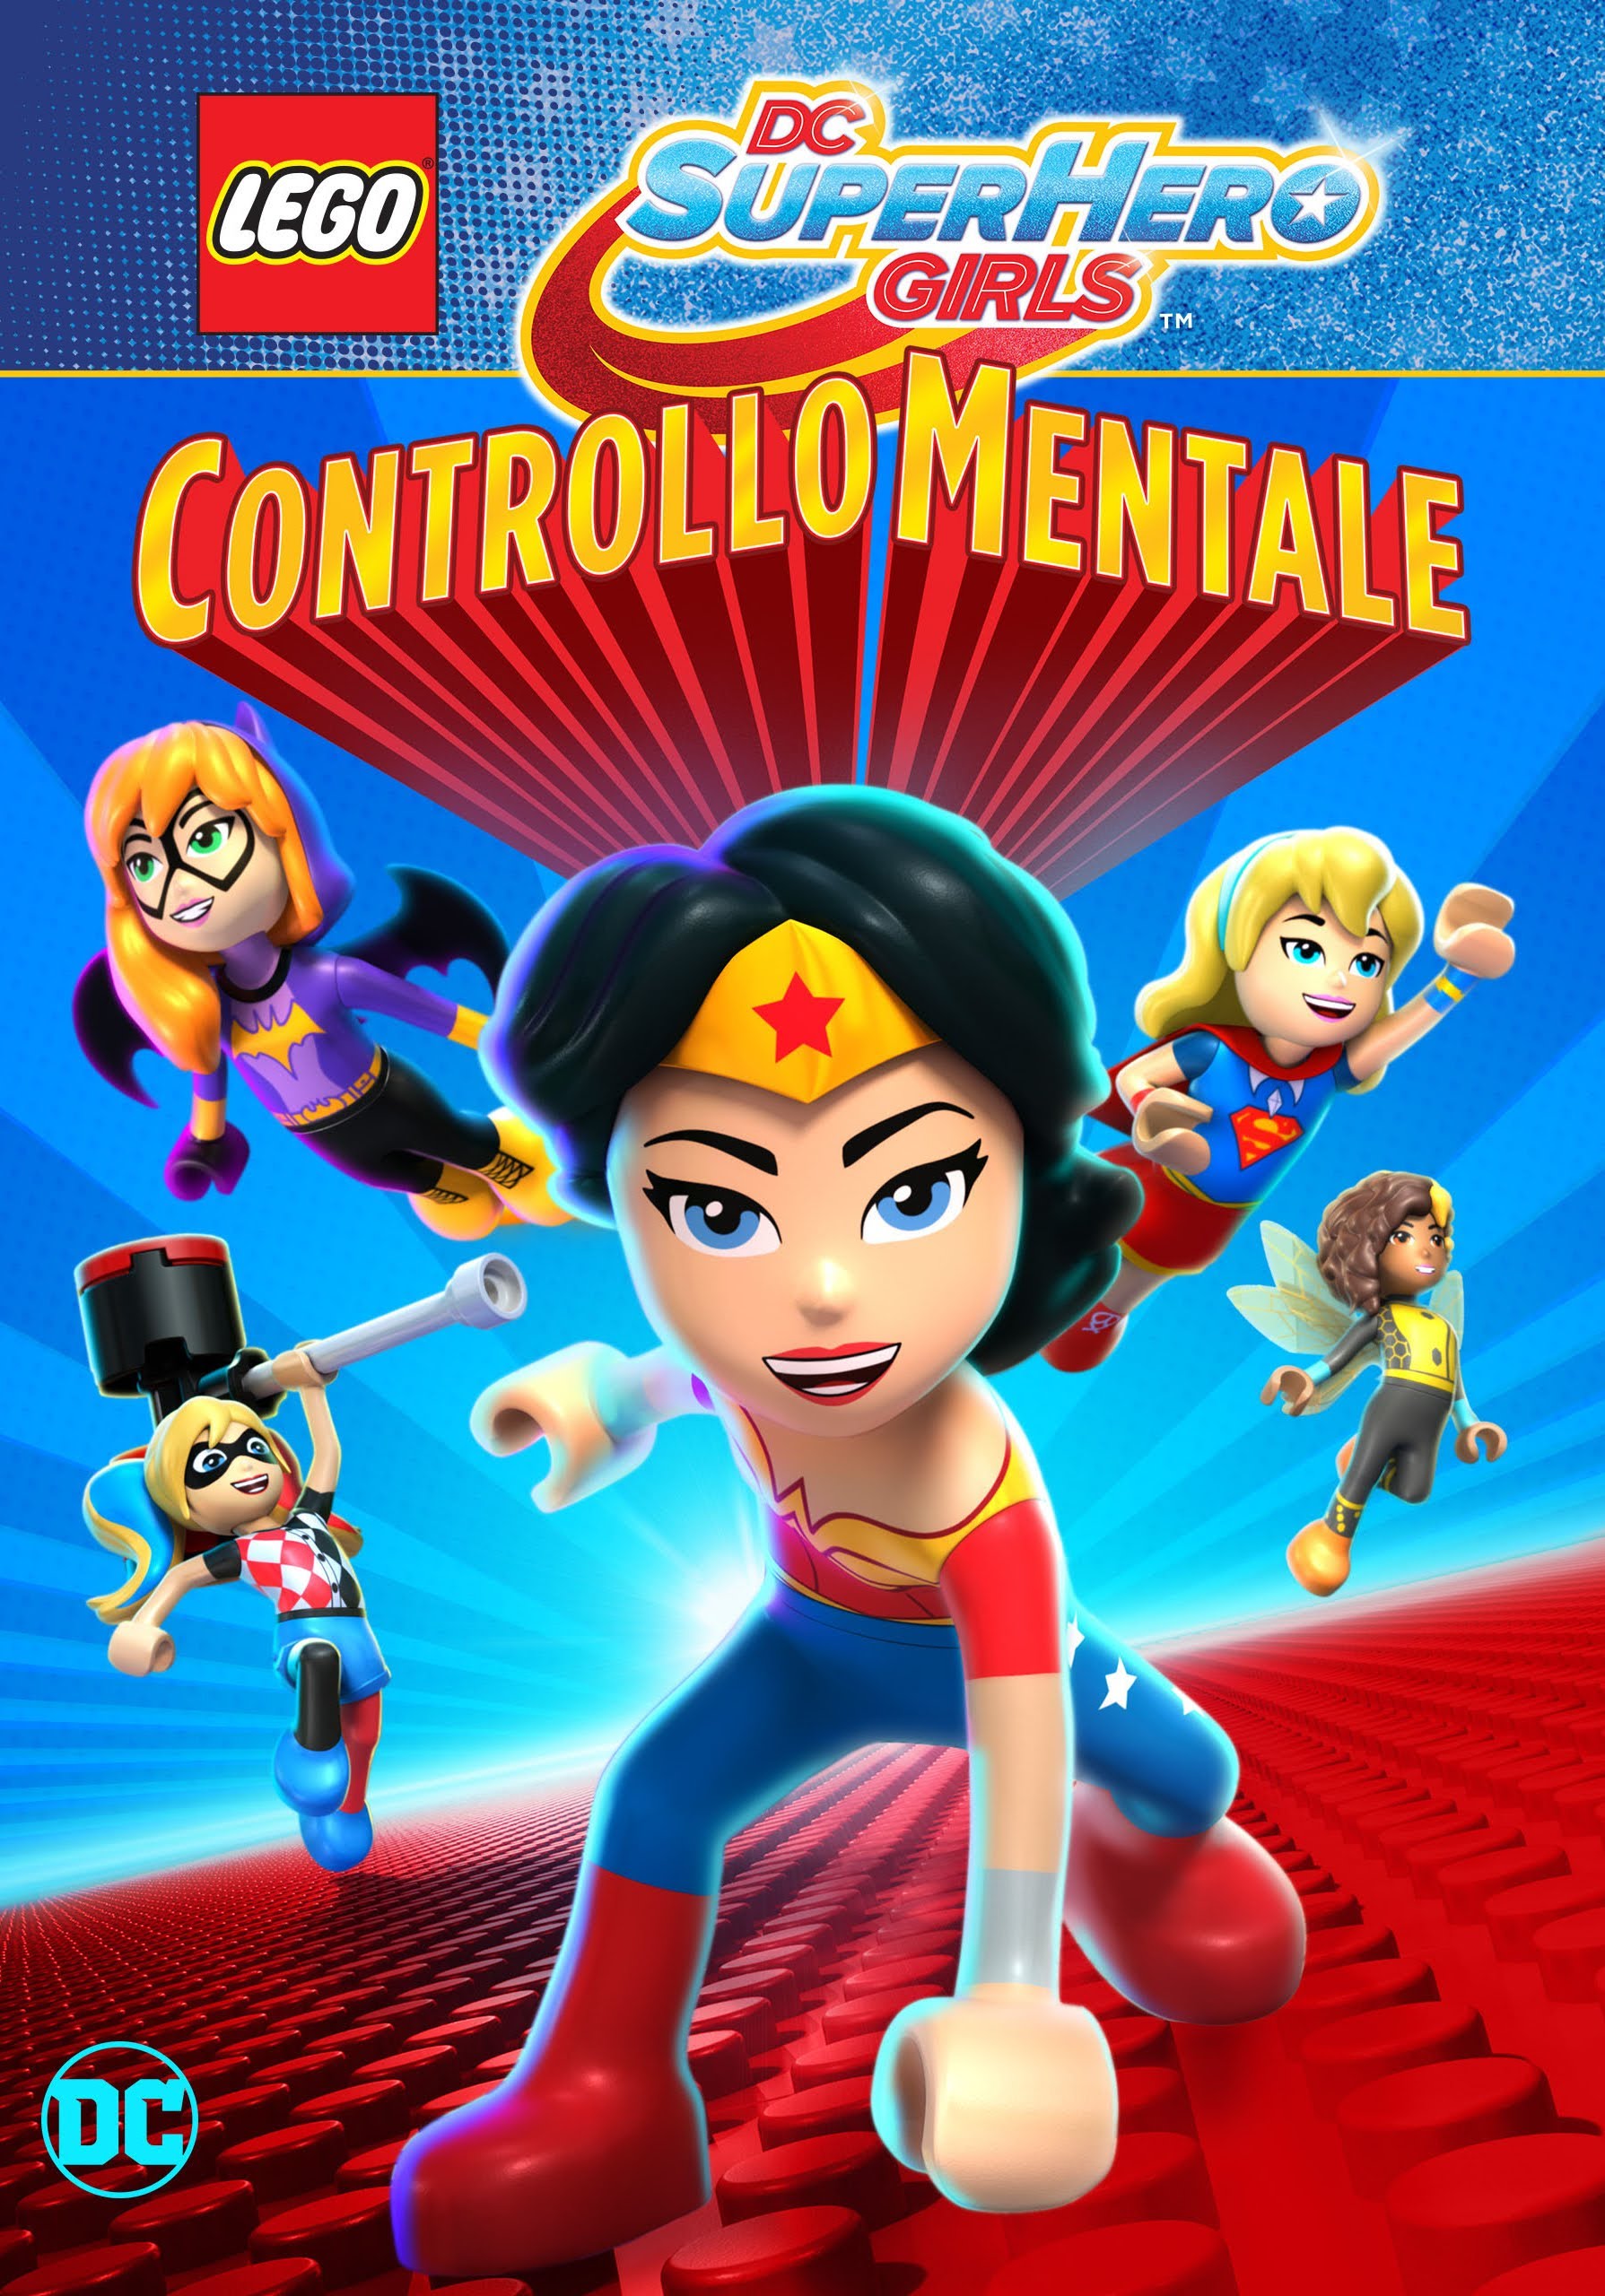 LEGO DC Super Hero Girls: Controllo mentale [HD] (2017)